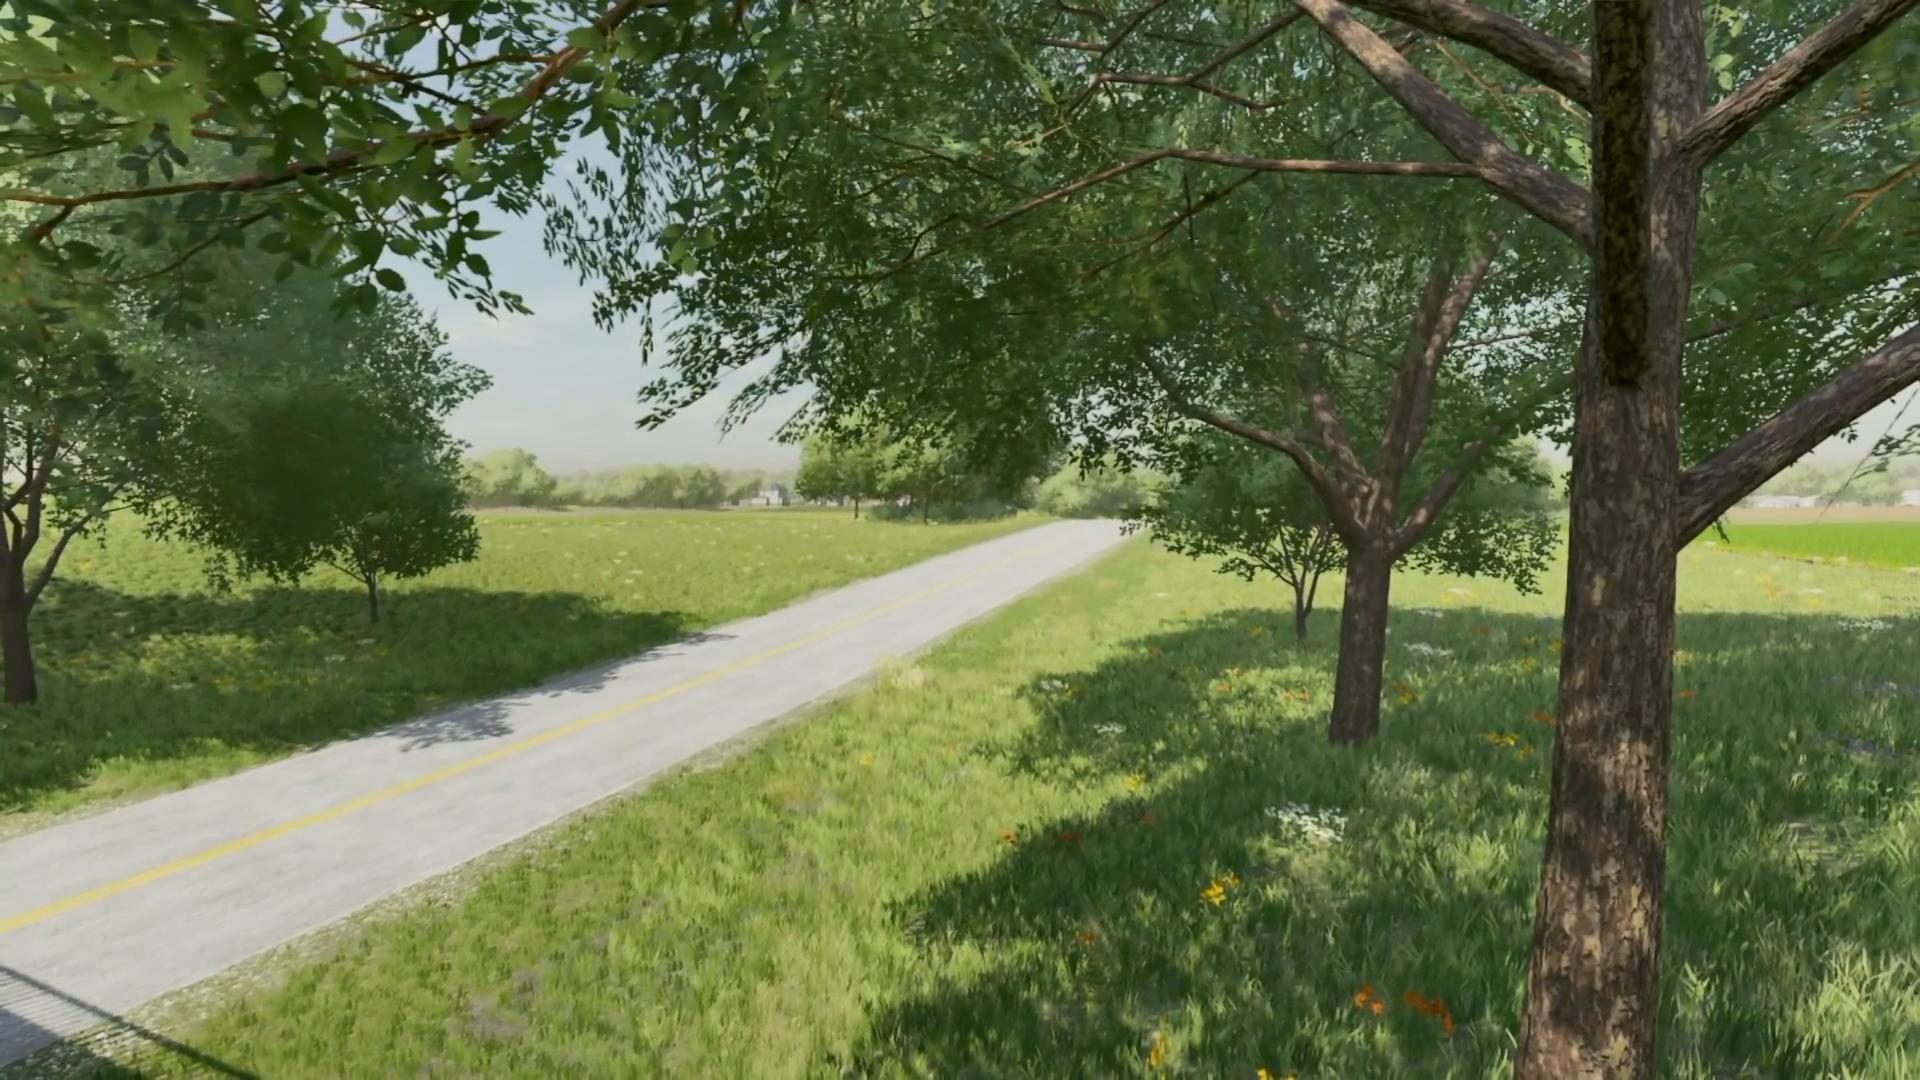 《模拟农场22》发布季节变化系统介绍影片 可开可关